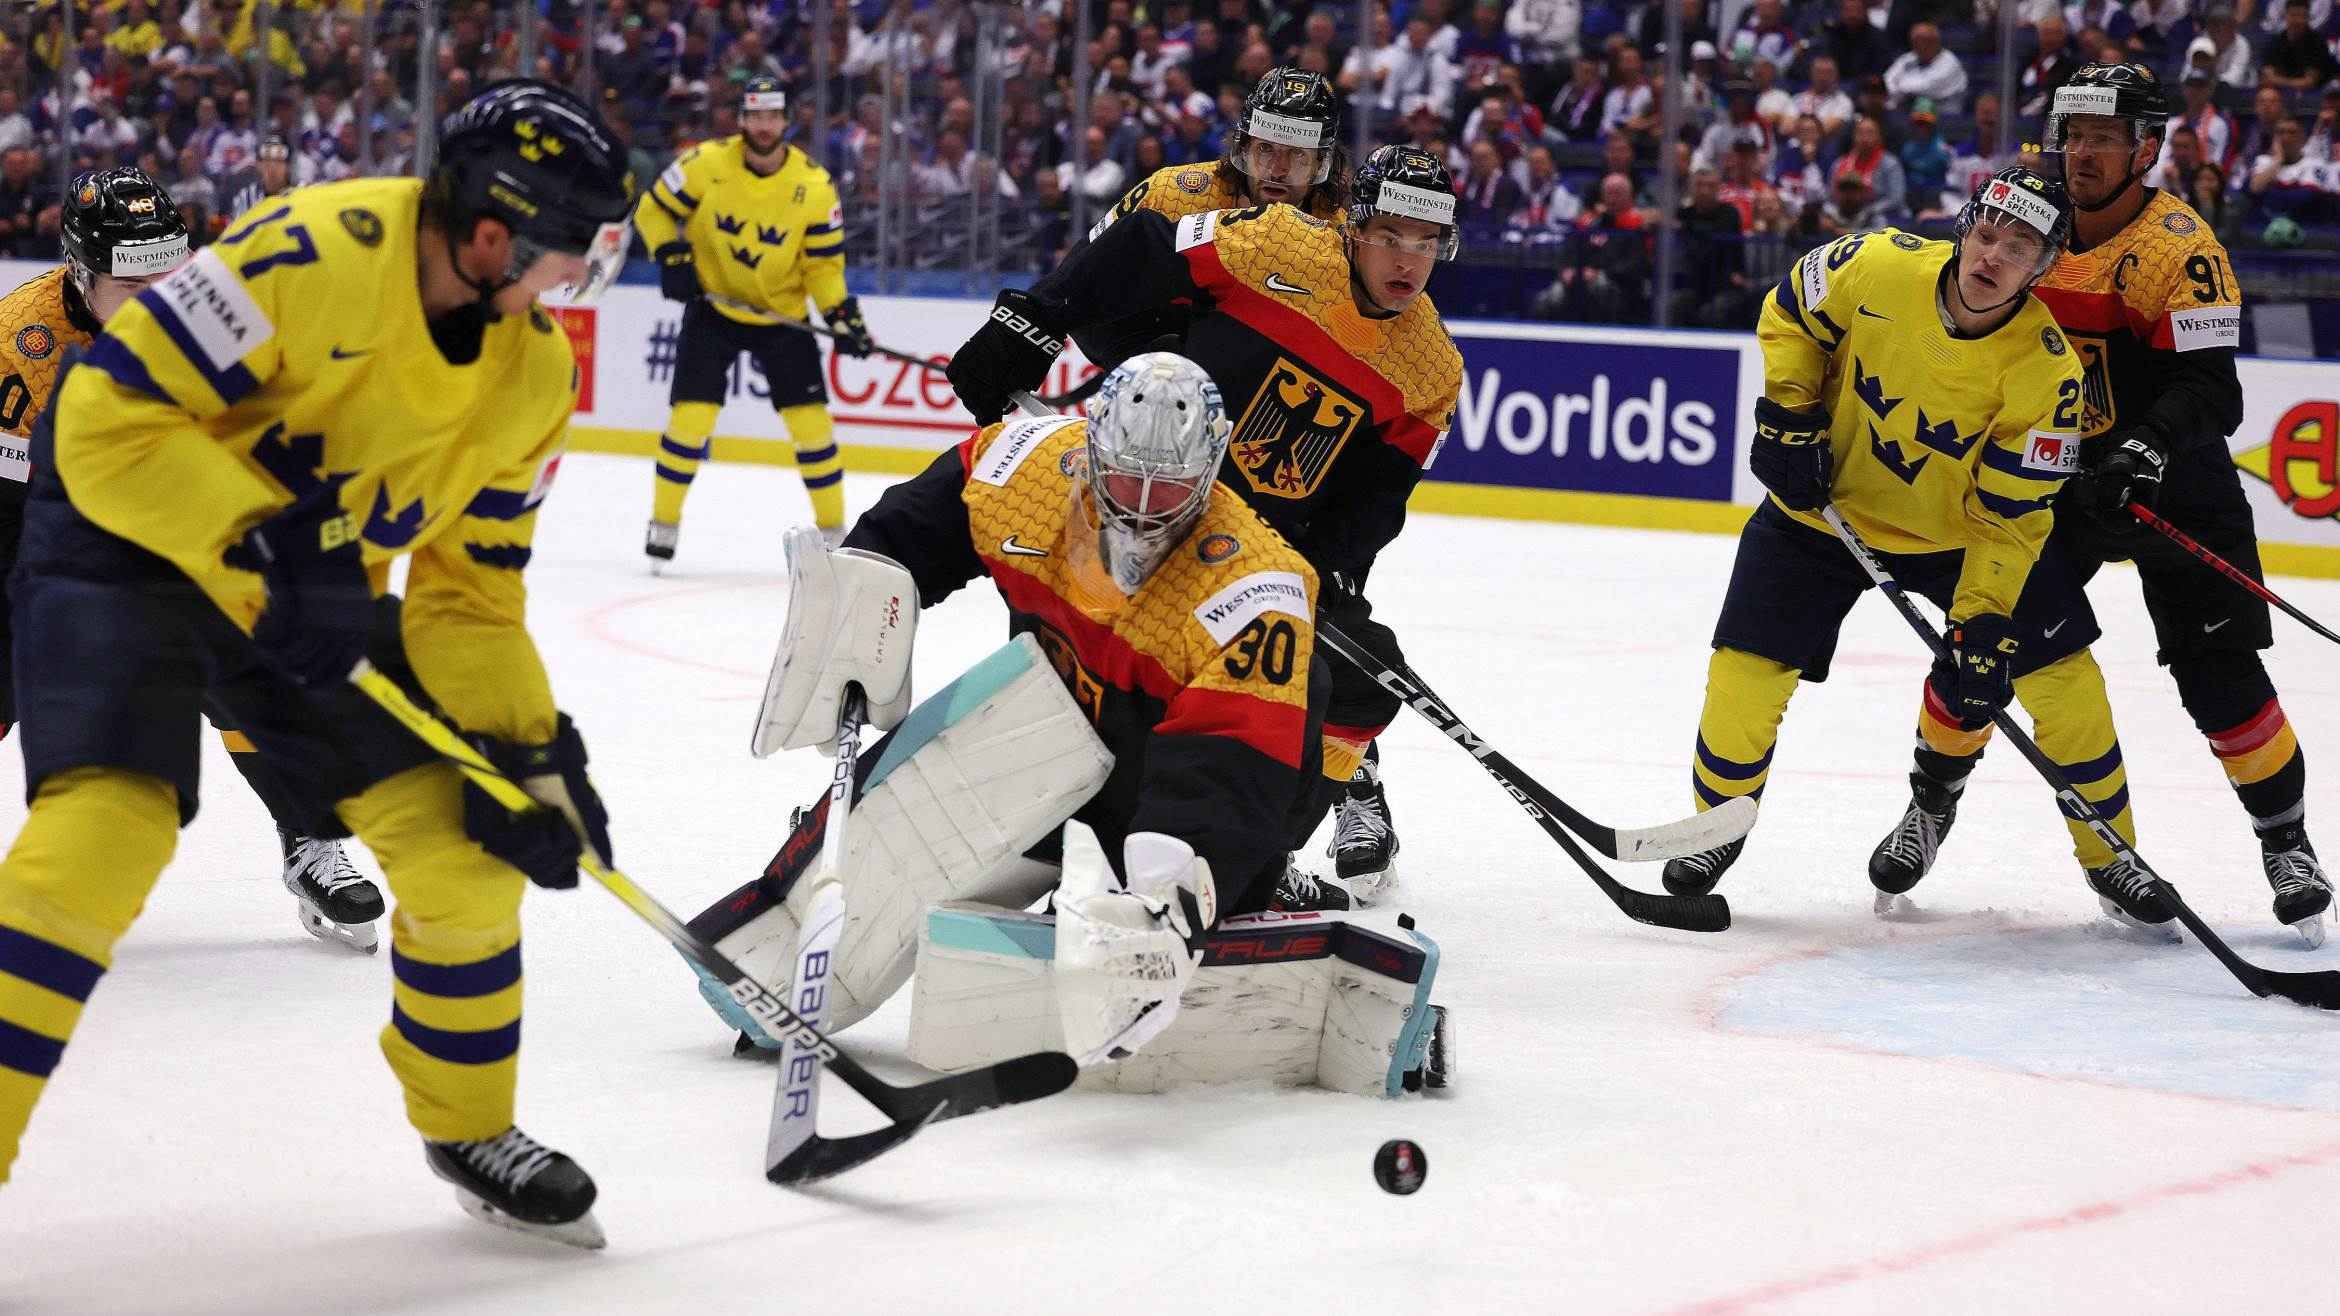 Eishockey-WM ist in der Prime Time chancenlos, KI-Thriller im ZDF kein Hit